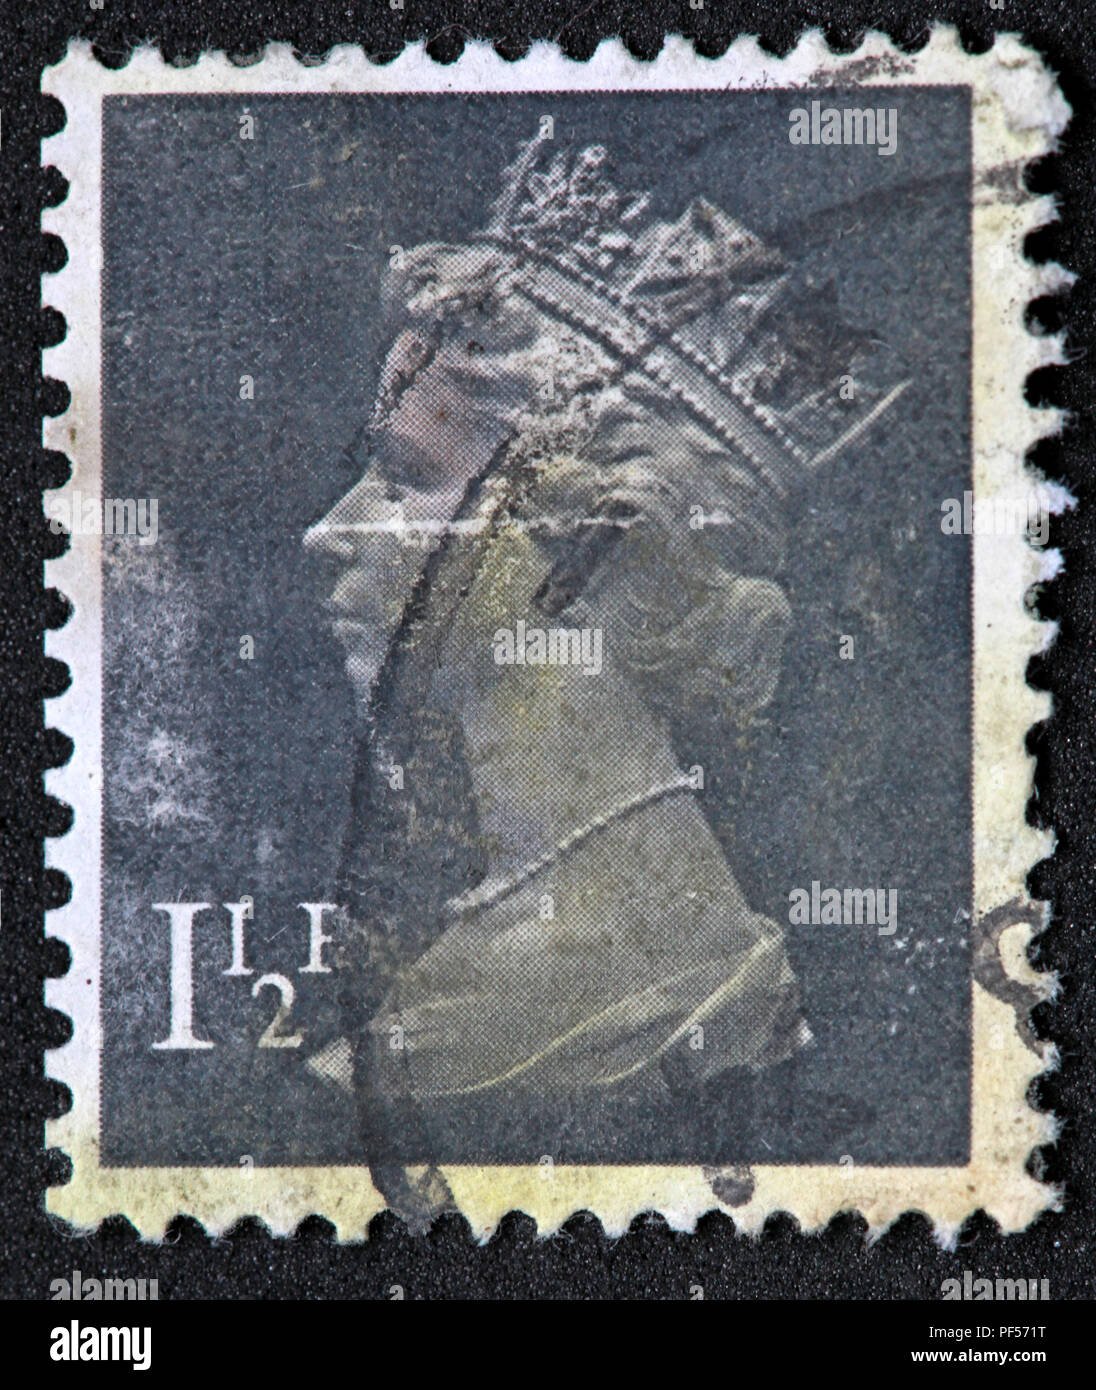 Usato affrancati British UK timbro - 1.5p - Queen Elizabeth II Foto Stock